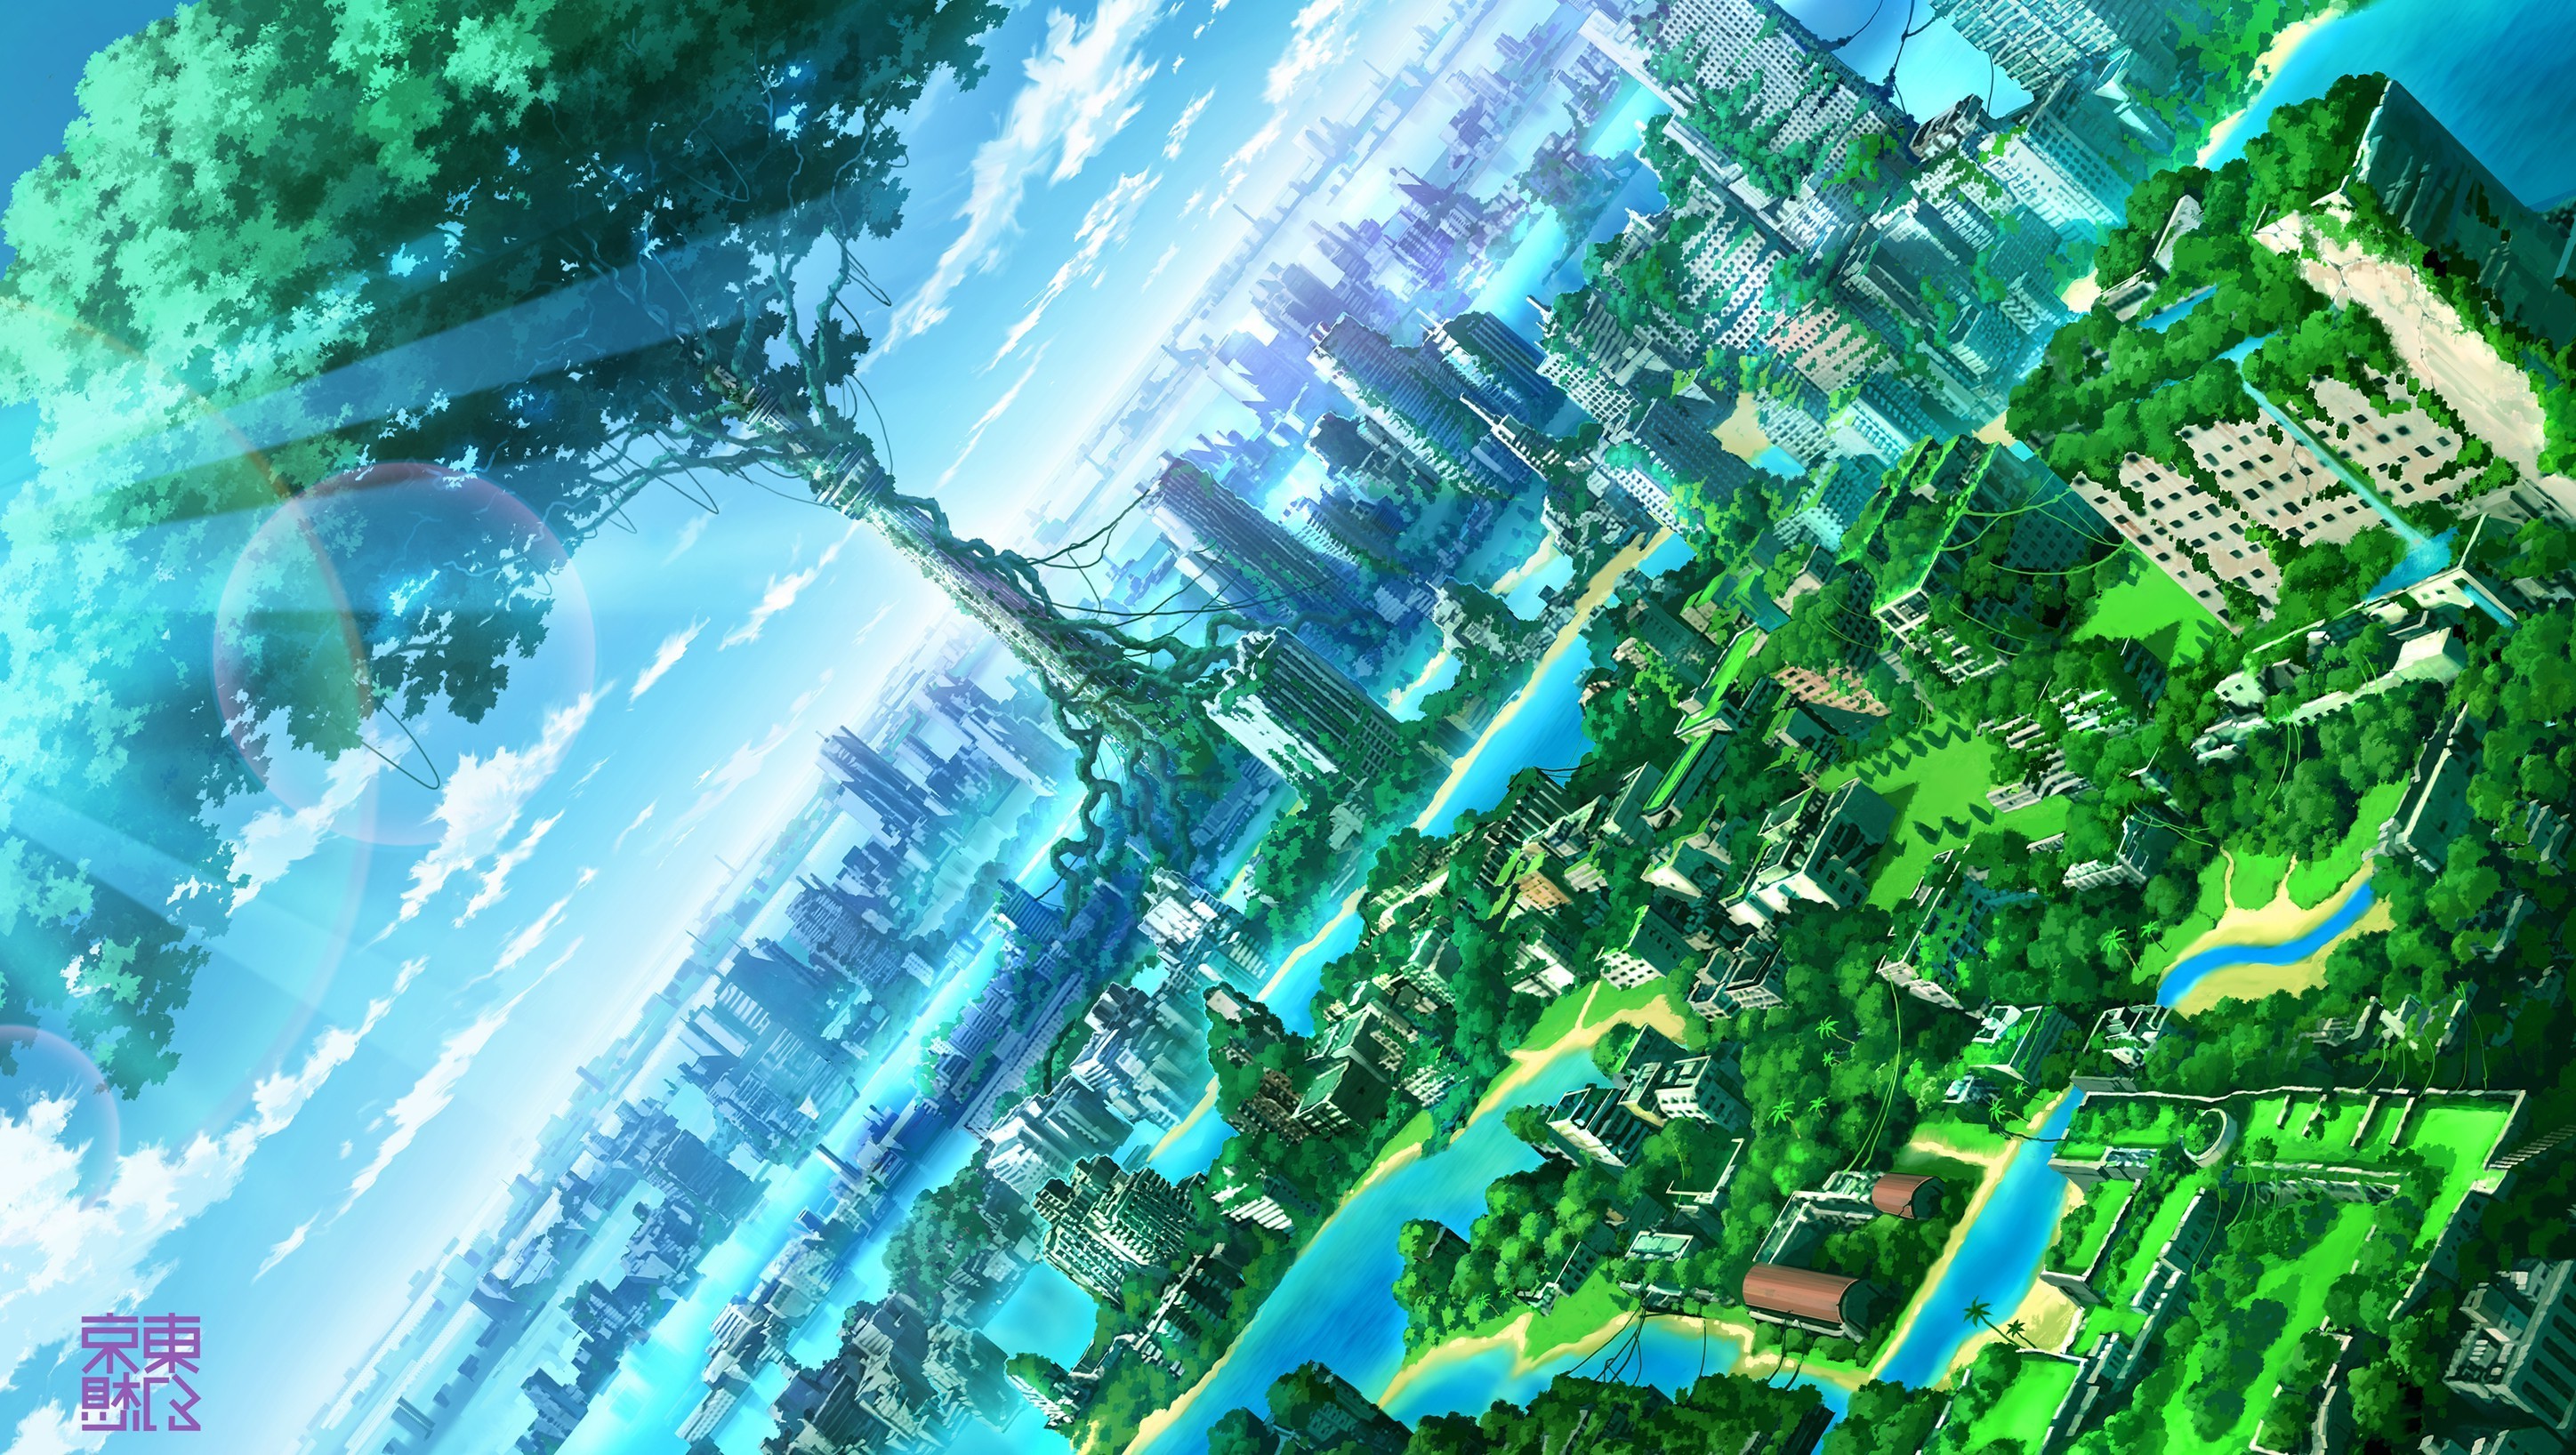 anime fantasy wallpaper,verde,agua,mundo,ilustración